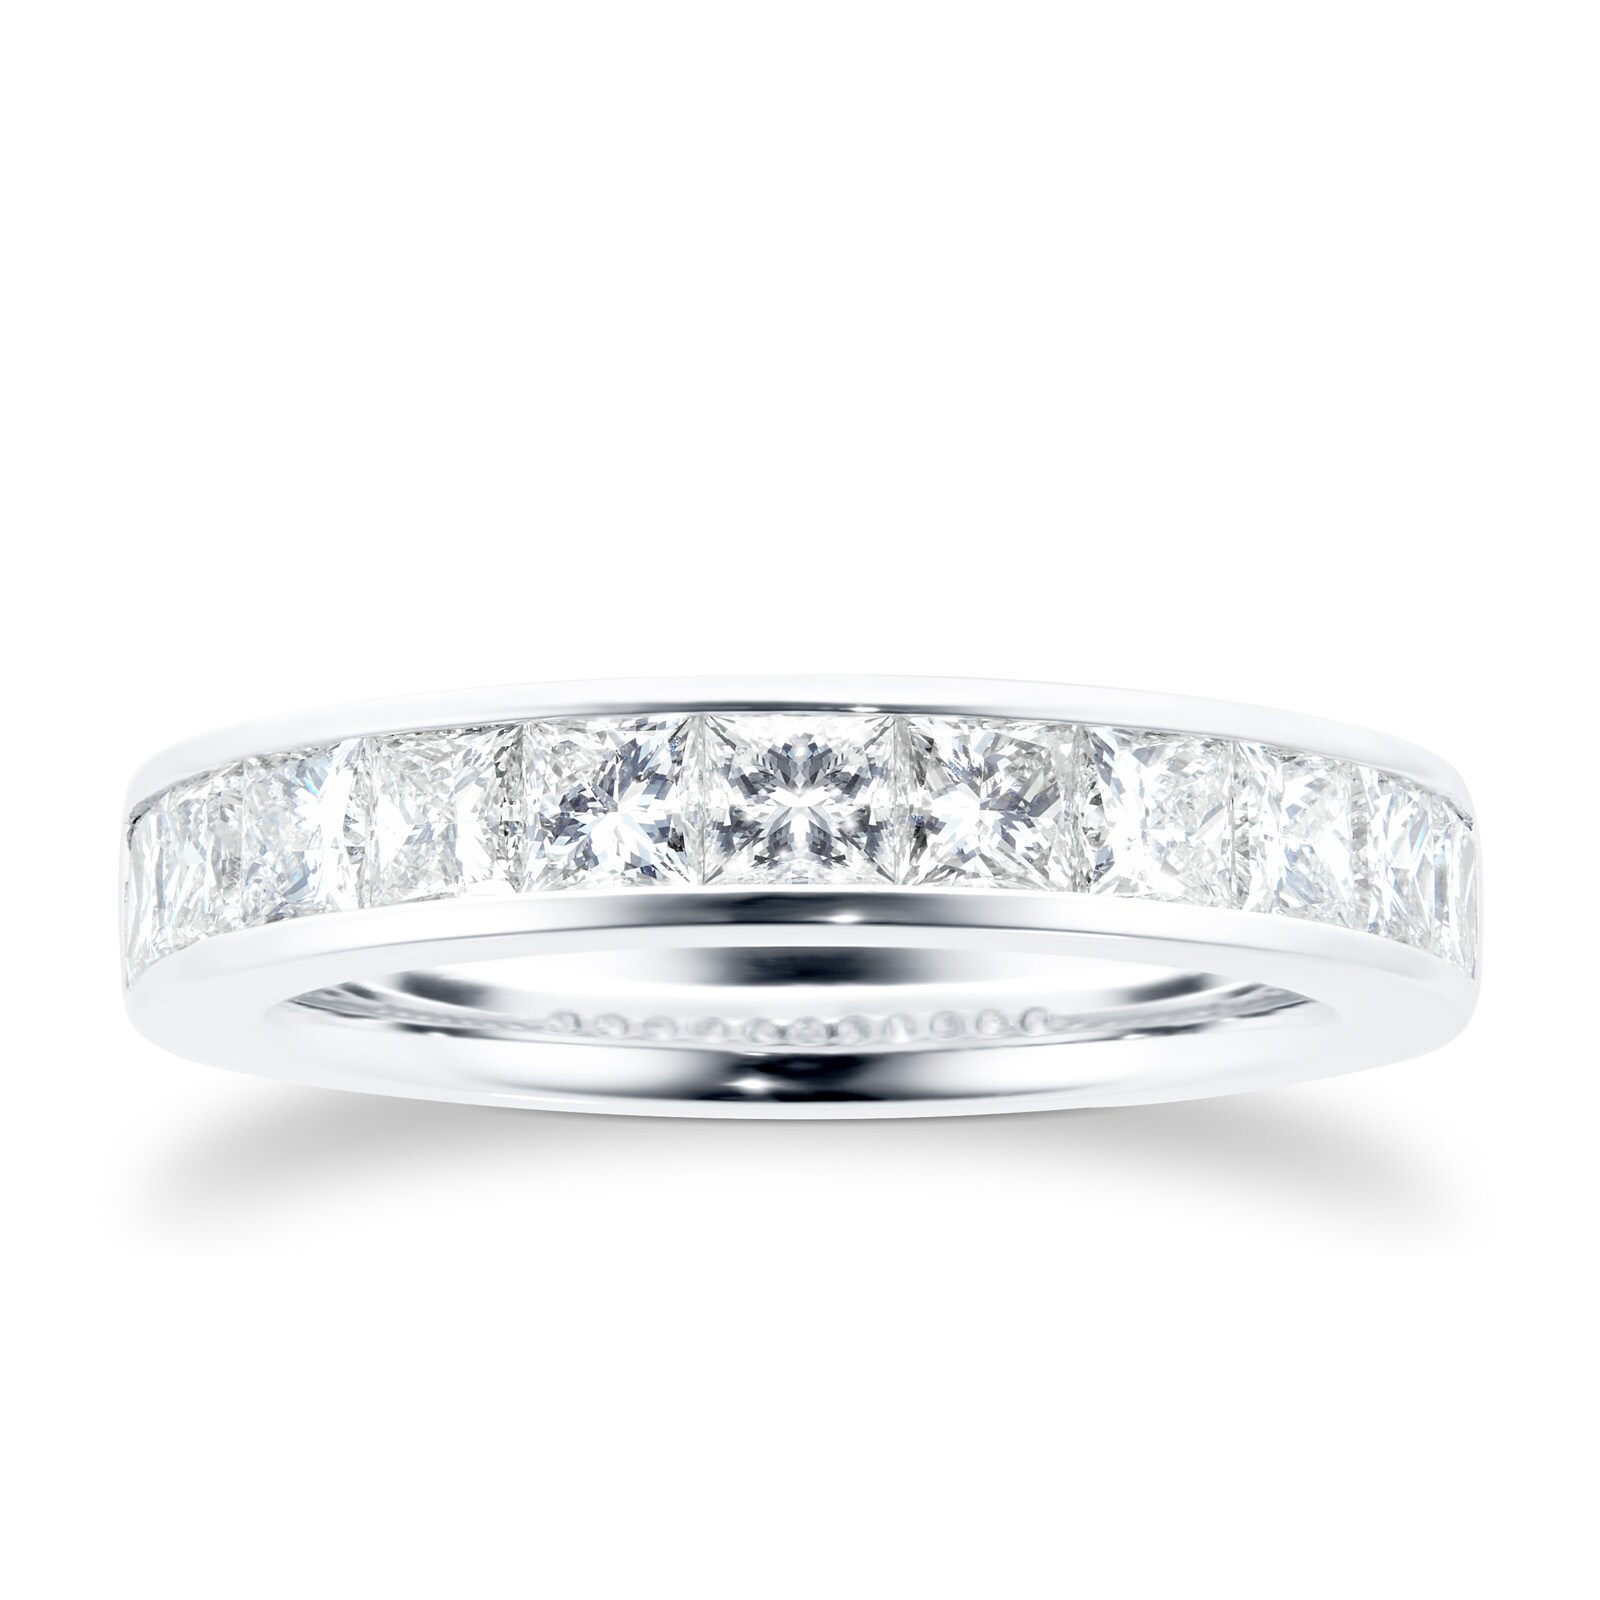 18 Carat White Gold 1.50 Carat Princess Cut Half Eternity Ring - Ring Size K